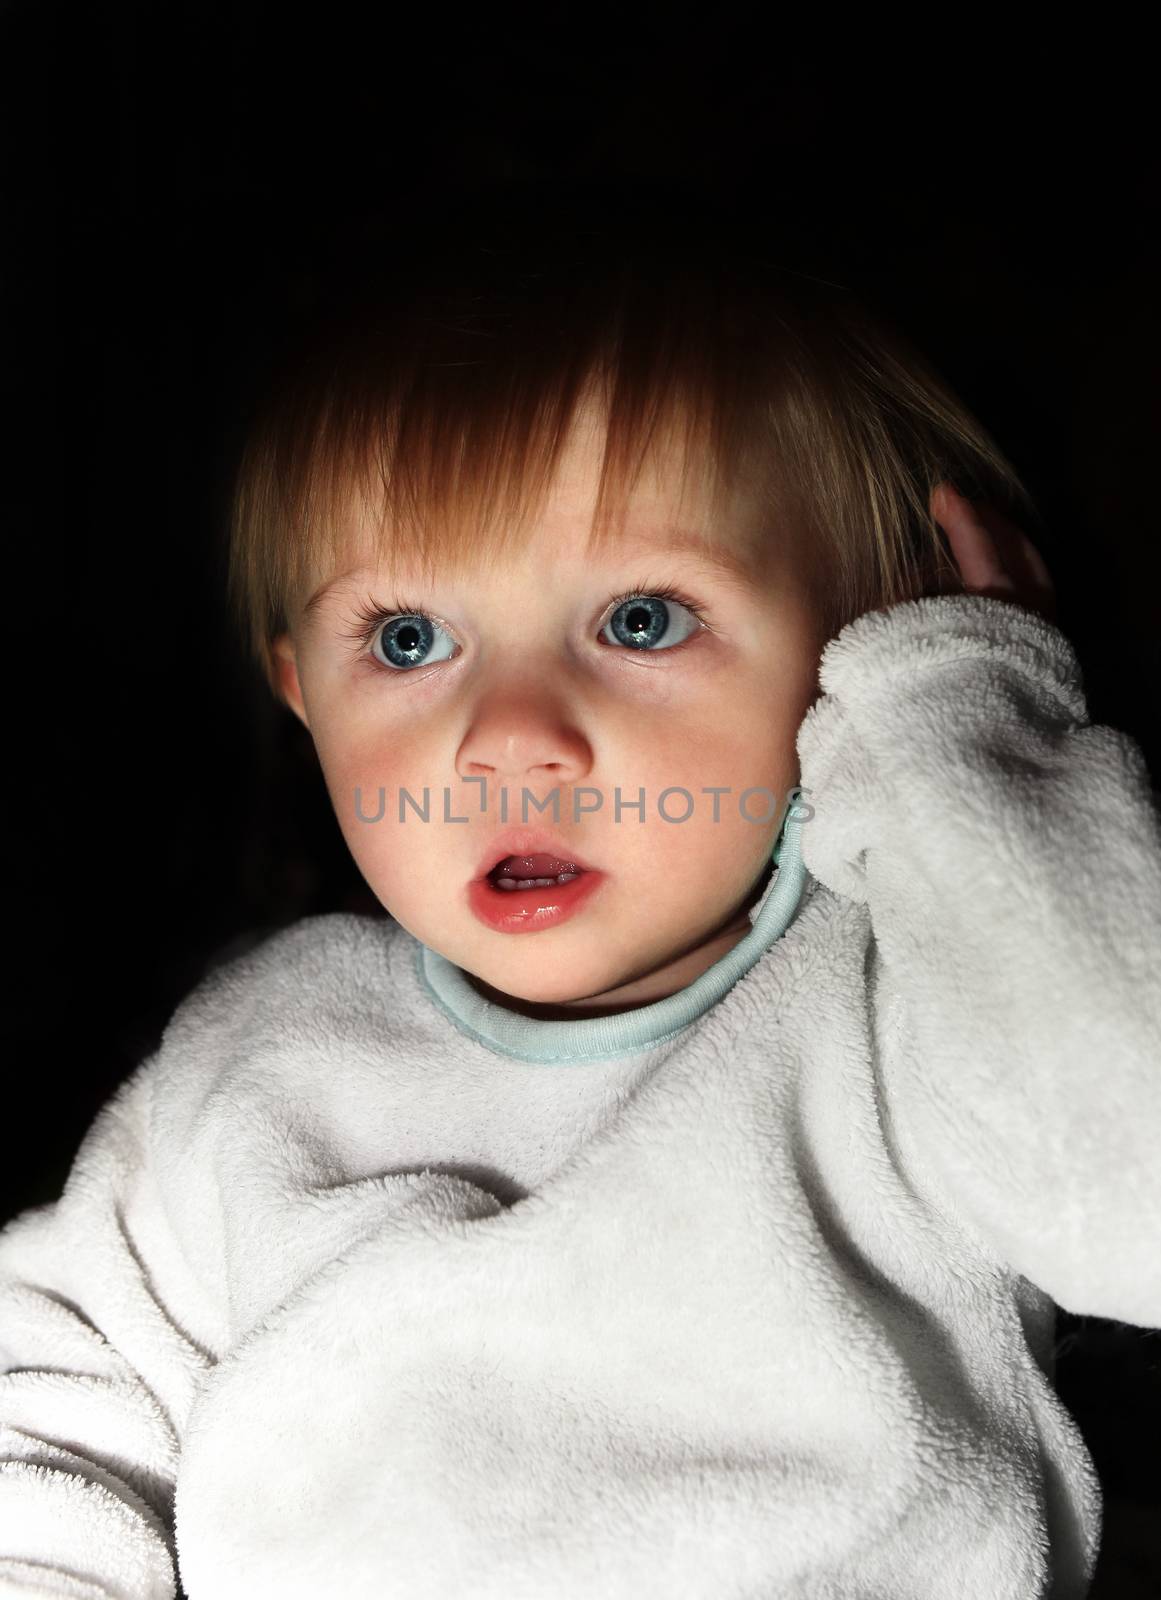 Scared Child Boy Portrait in the Dark Room